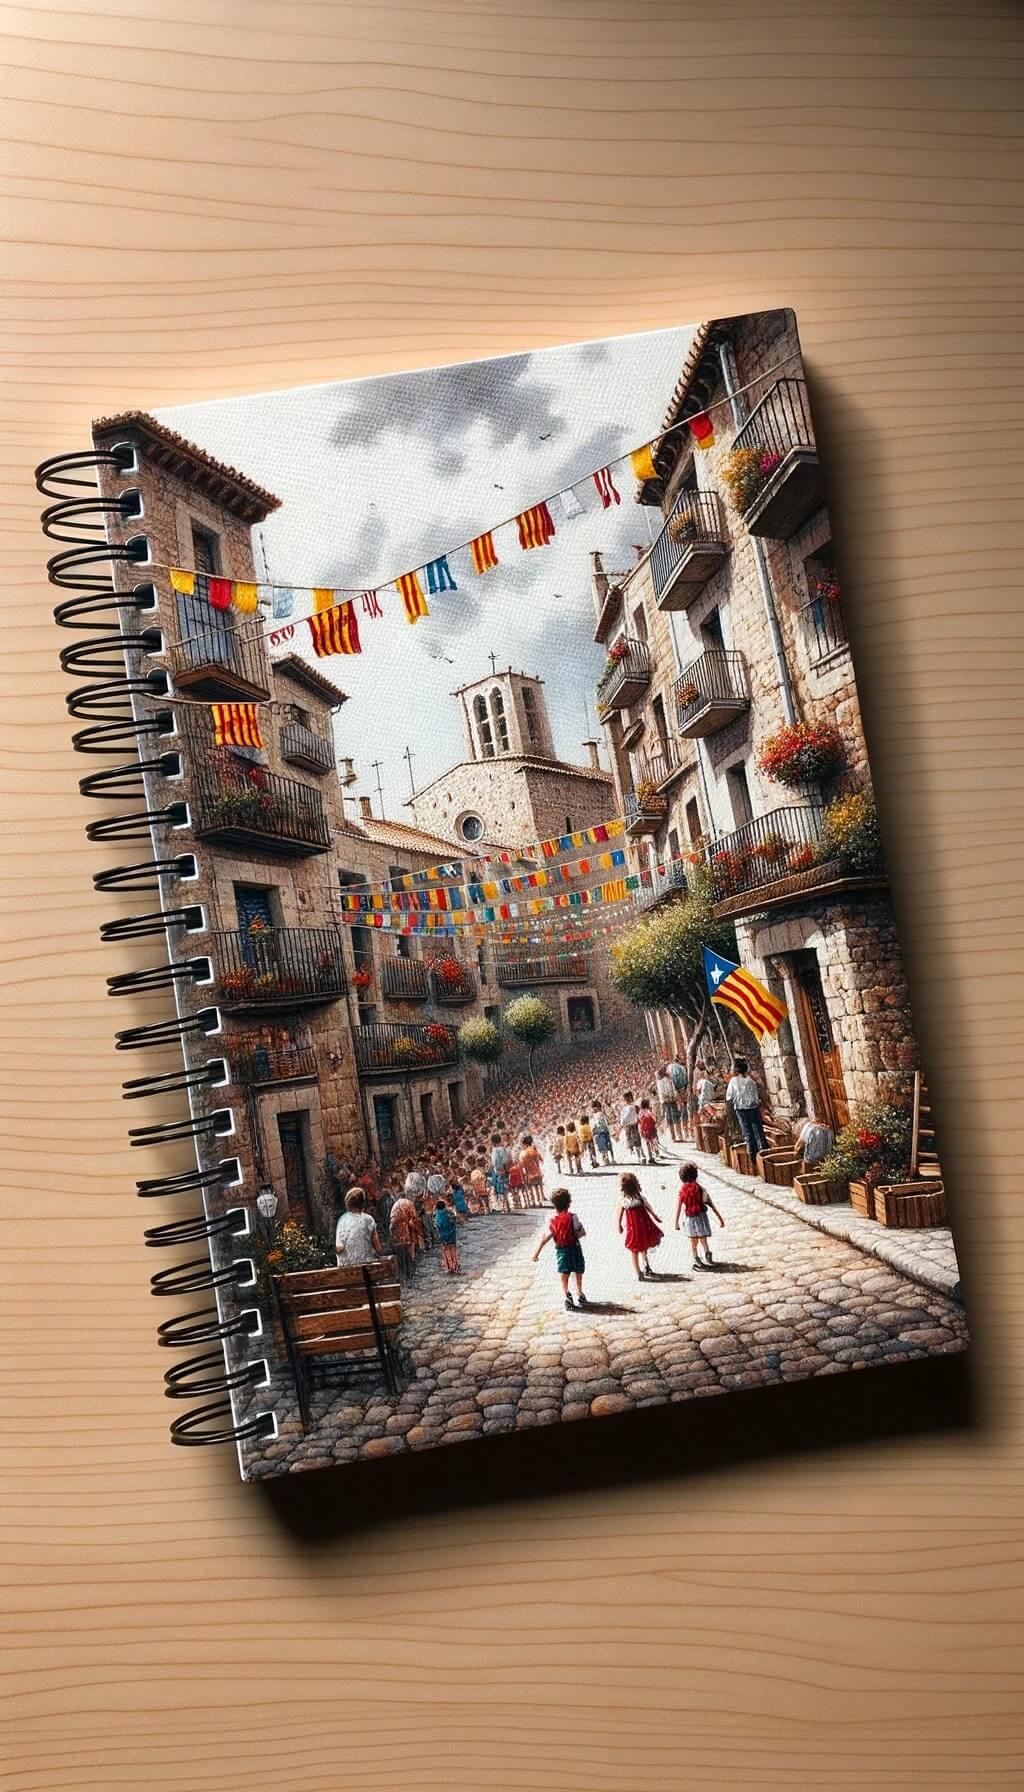 Un diseño de cuaderno escolar con cubierta texturizada. Muestra una pintura en acuarela de la calle de un pueblo catalán, con niños jugando y la bandera